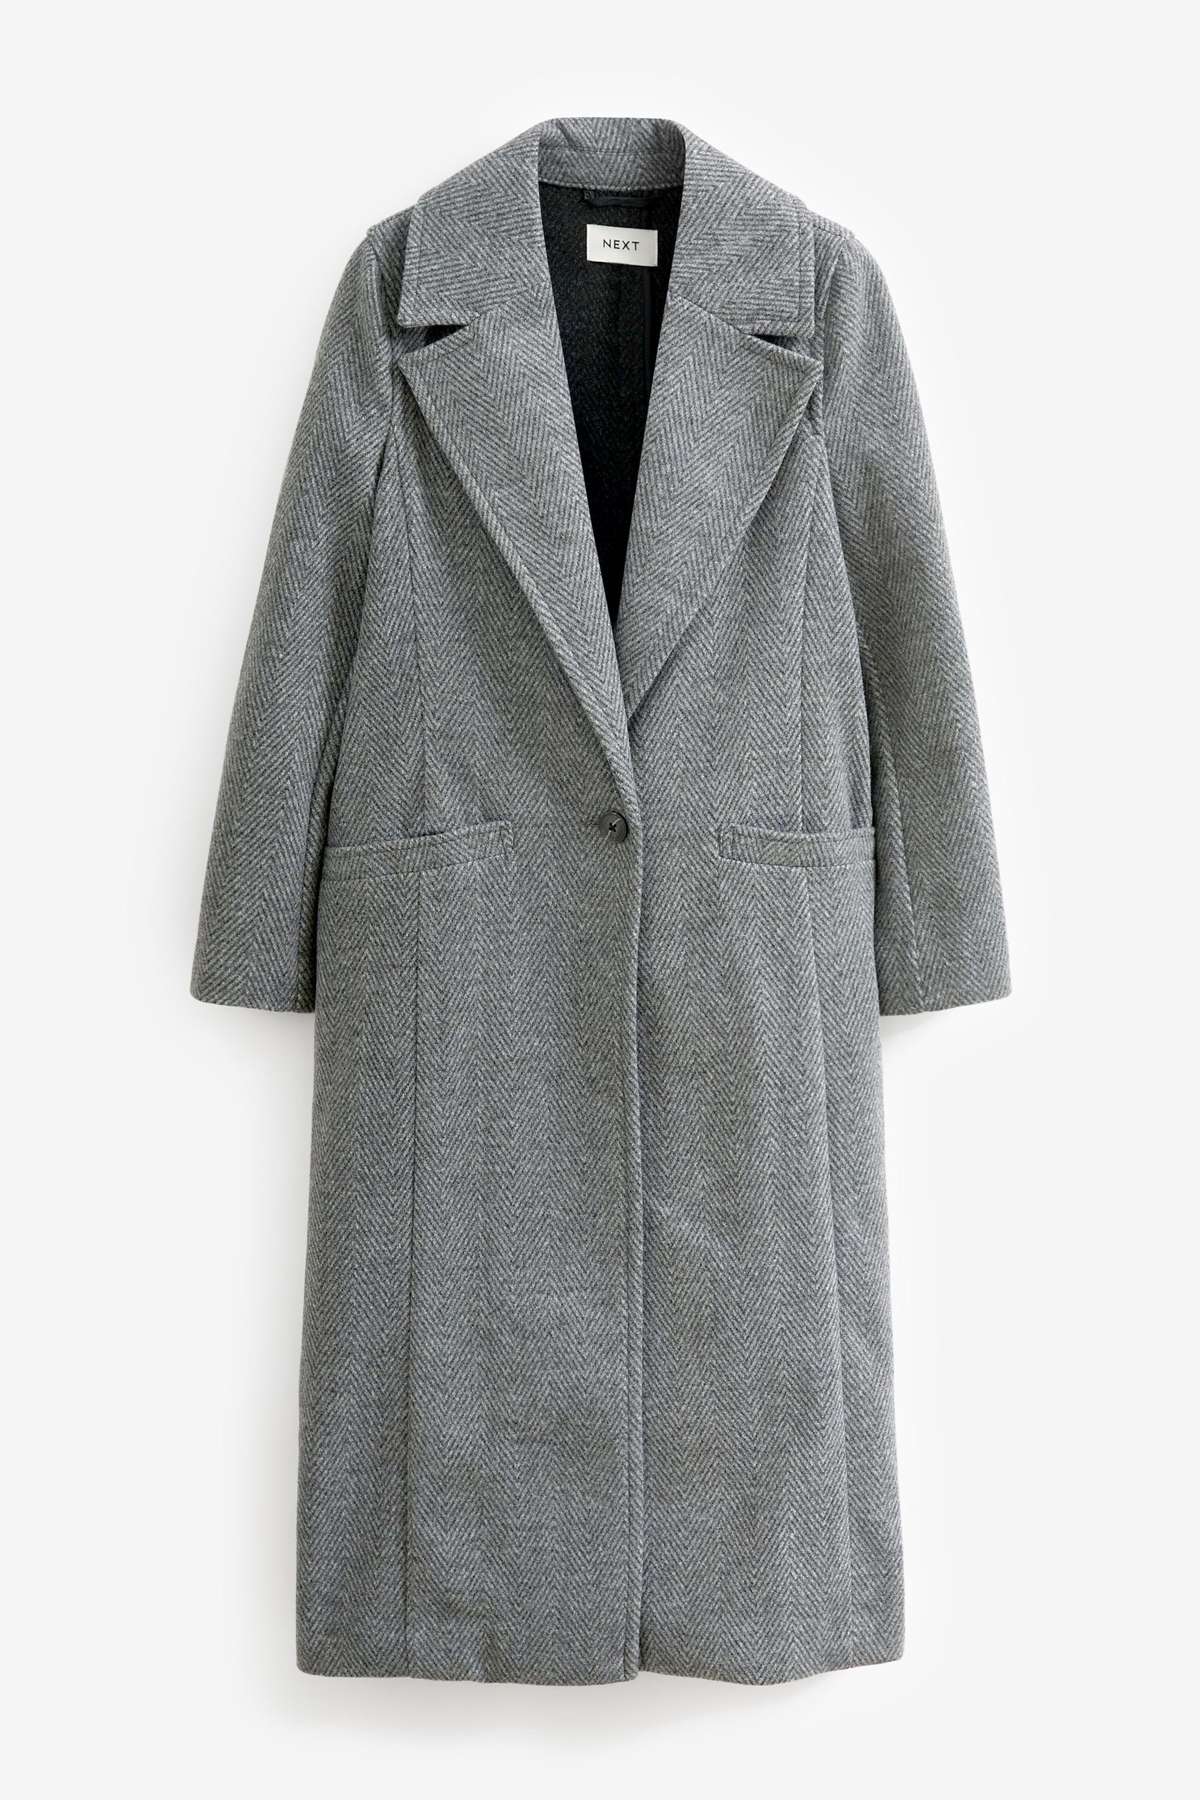 Длинное пальто Формальное пальто большого размера (1 шт.)